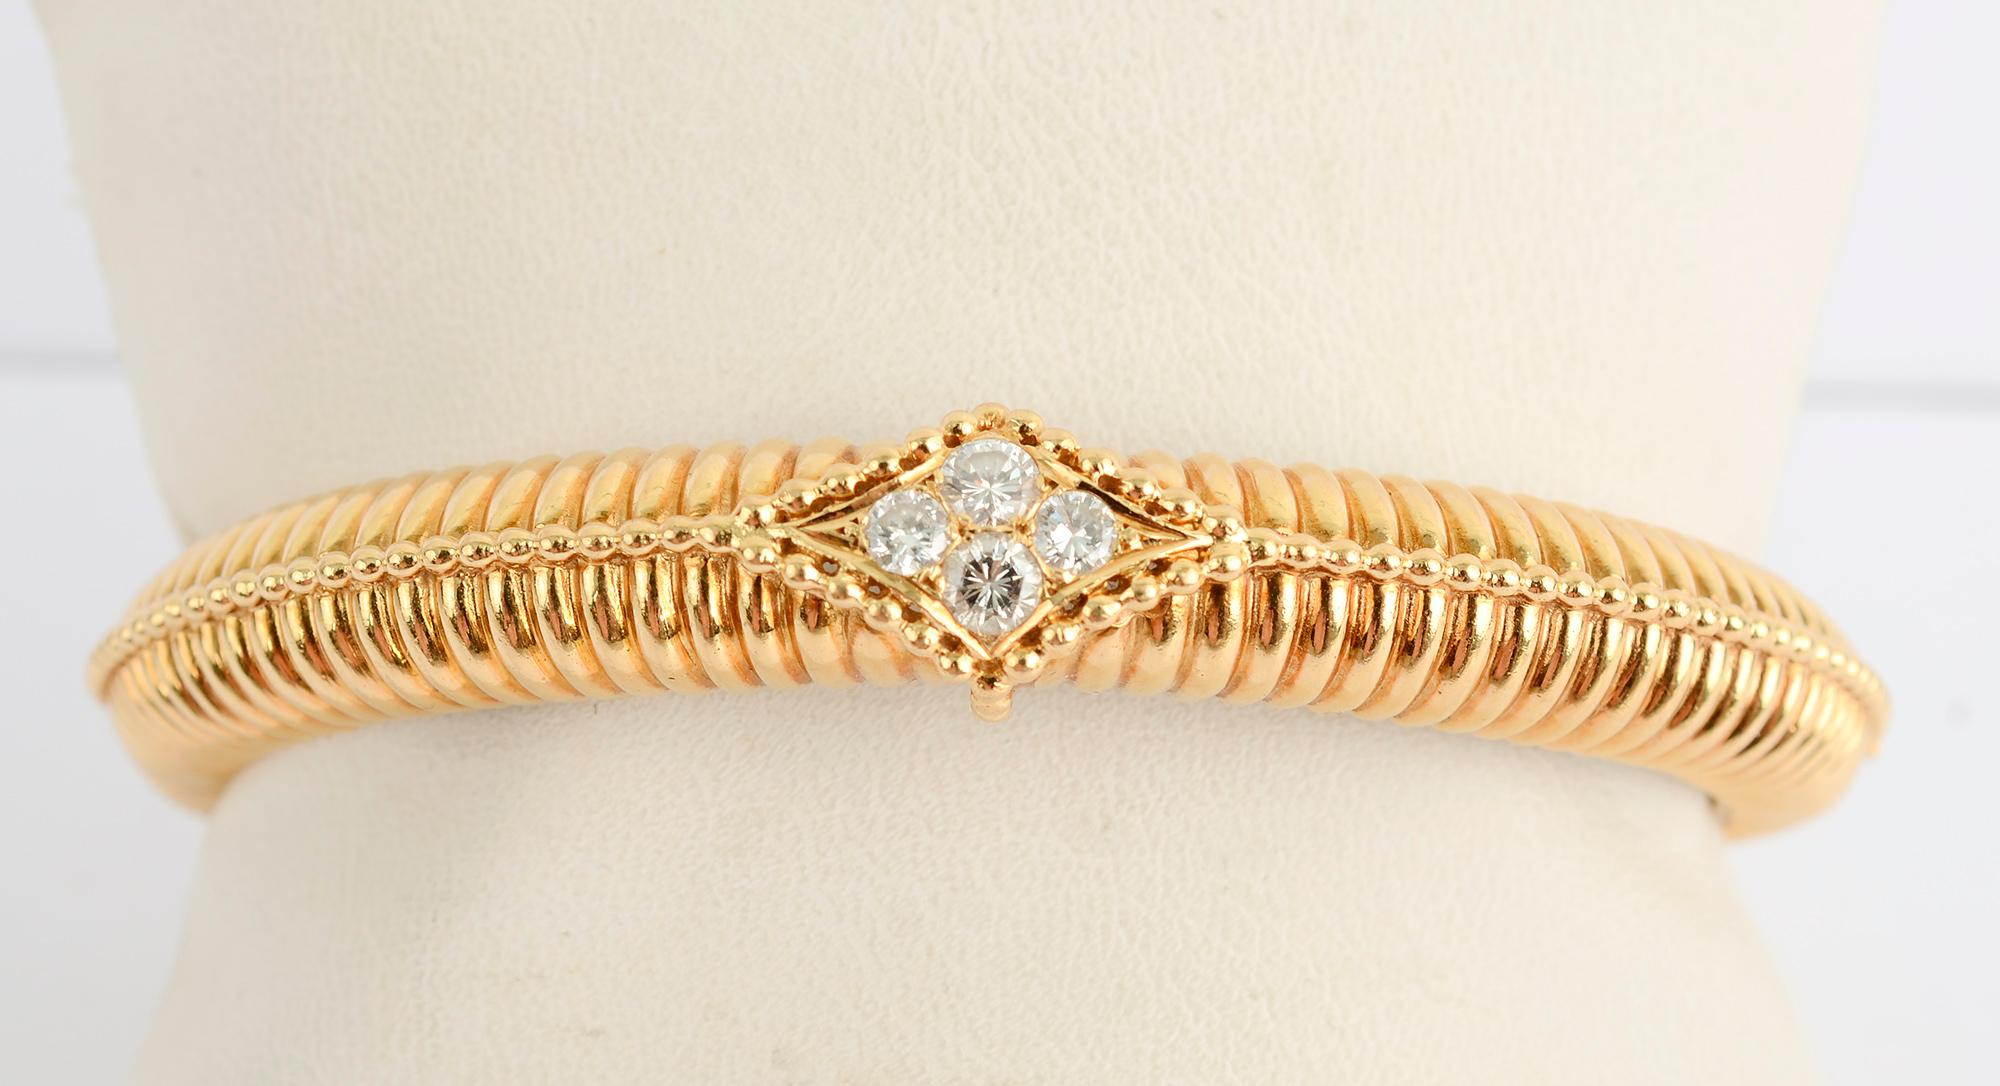 Bracelet bangle Van Cleef and Arpels, côtelé et articulé, avec quatre diamants au centre. Elles pèsent environ 0,8 carats. L'avant du bracelet a une largeur de 7/16 de pouce qui se réduit à 1/4 de pouce à l'arrière. Le diamètre intérieur est de 2